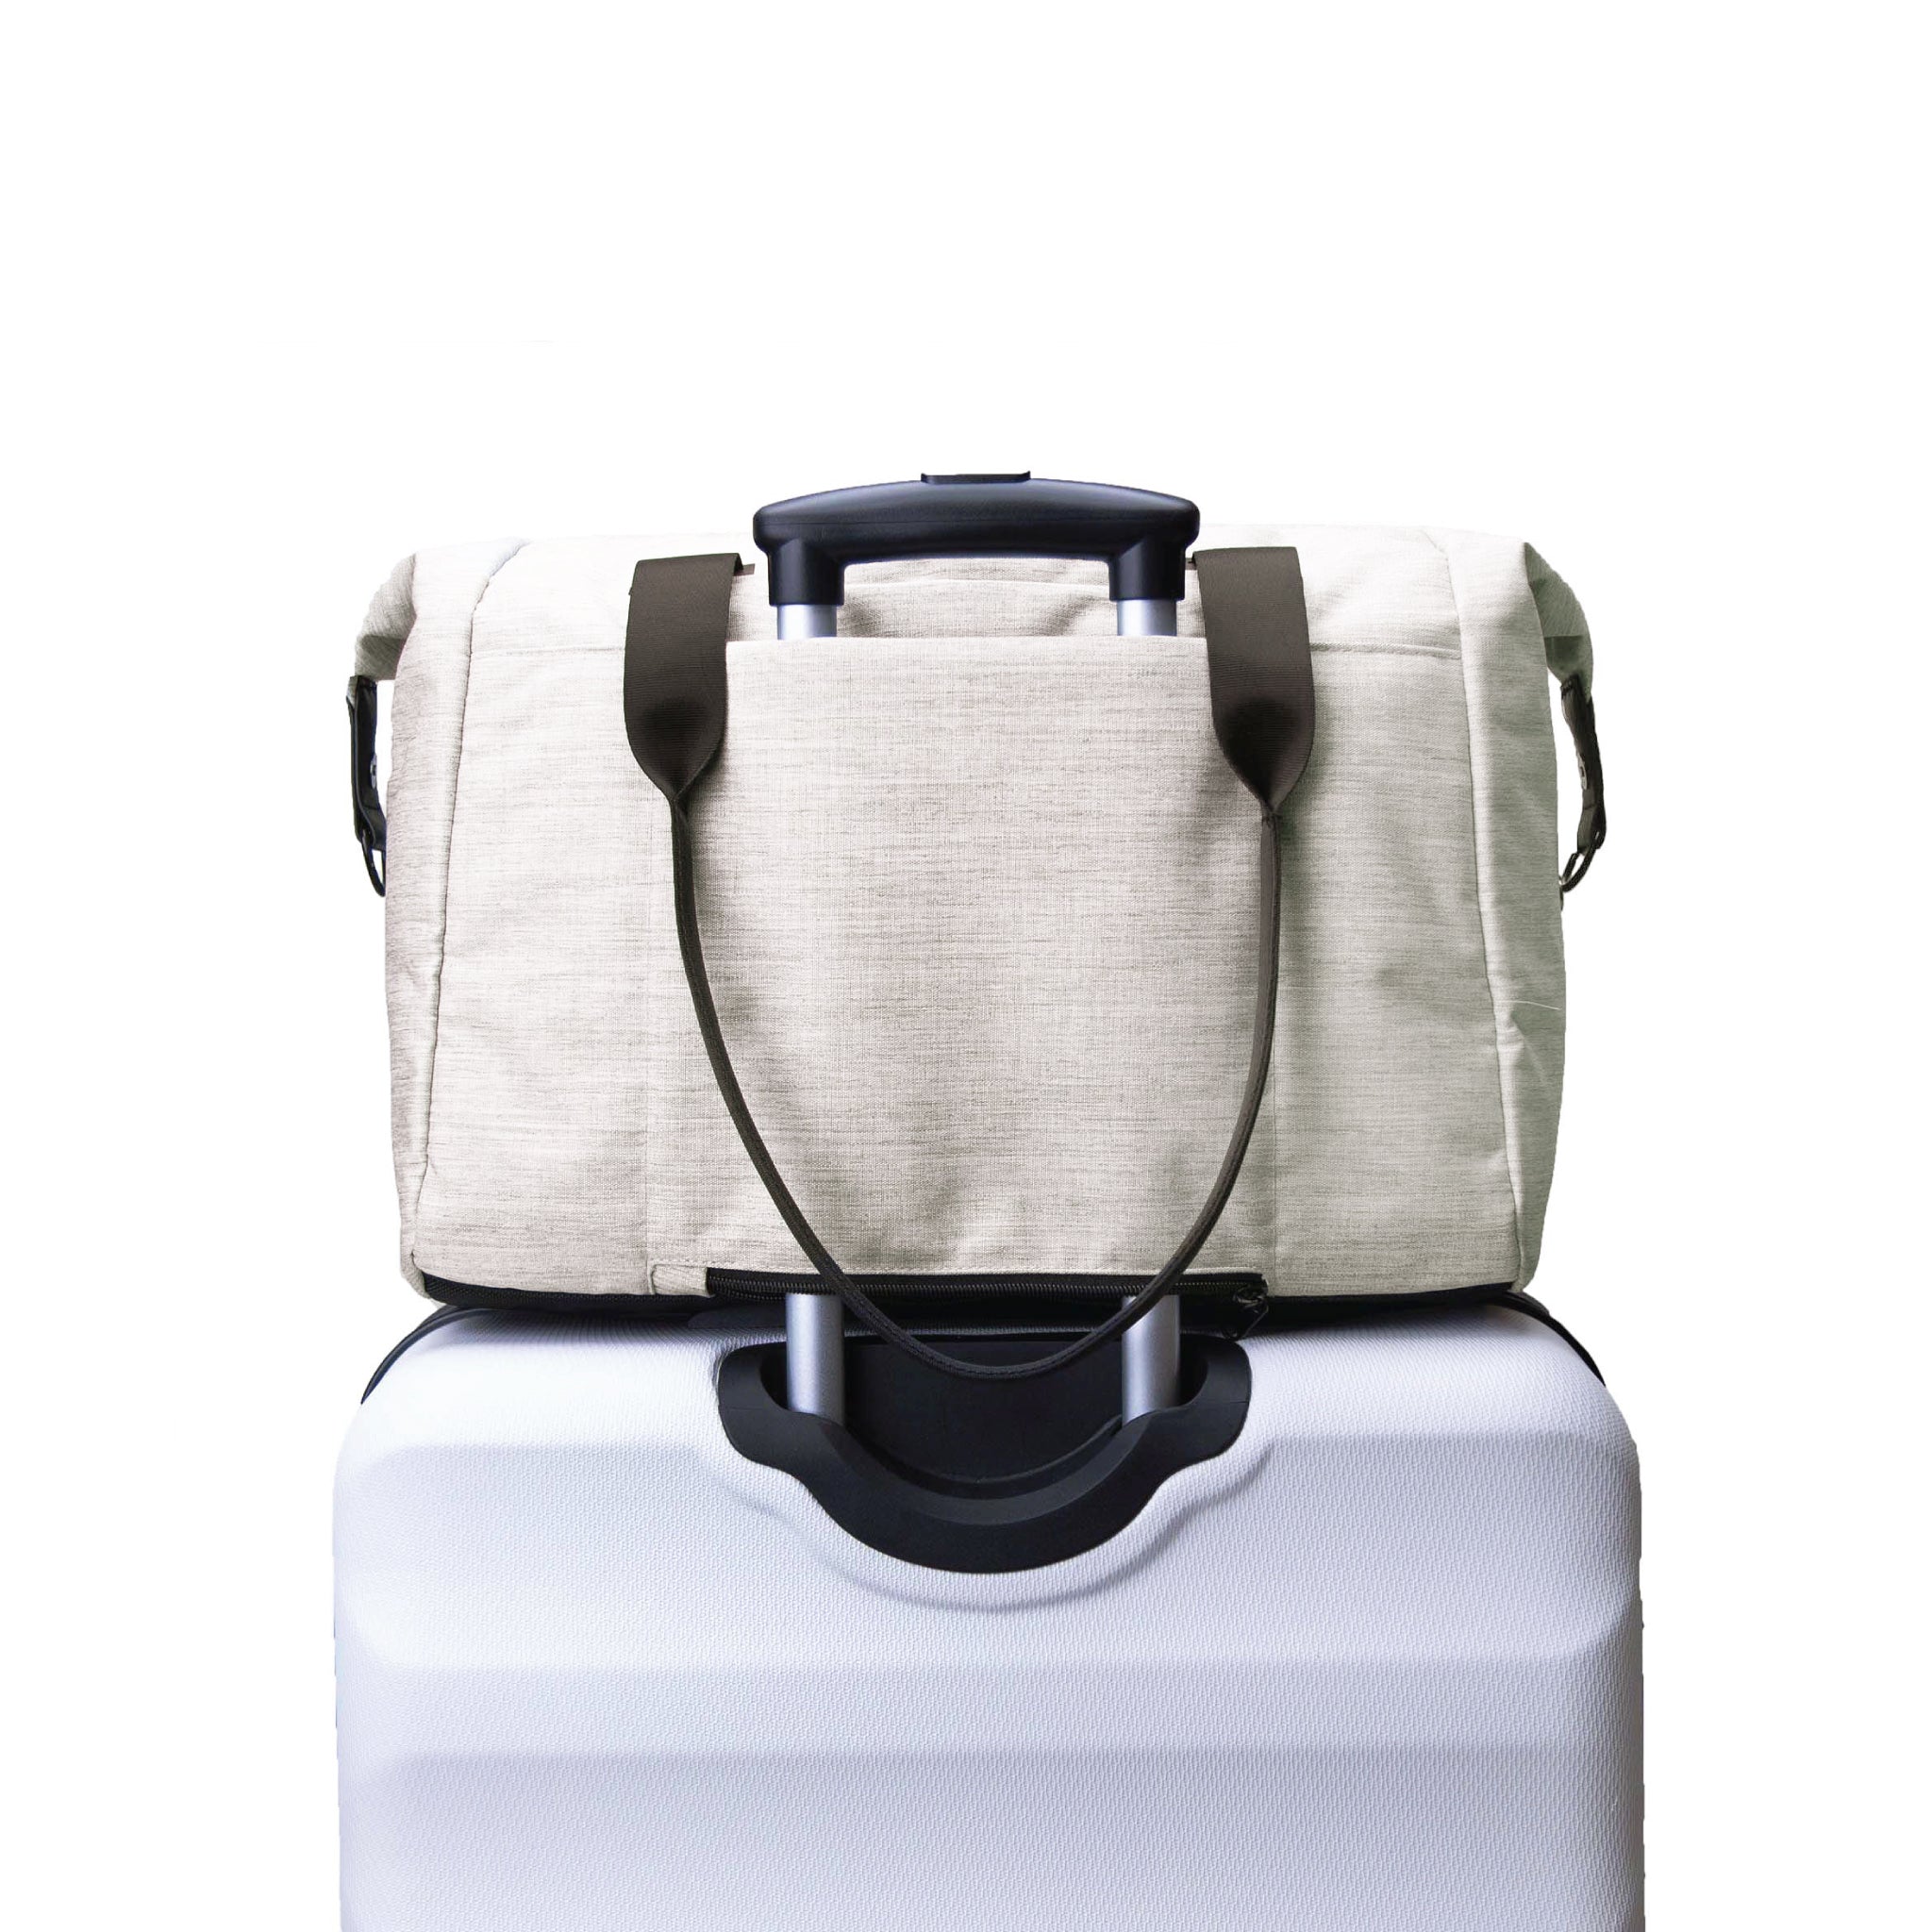 Vooray - Sac de voyage et sac de sport avec pochette pour ordinateur portable, poche pour chaussures et poche sèche ()